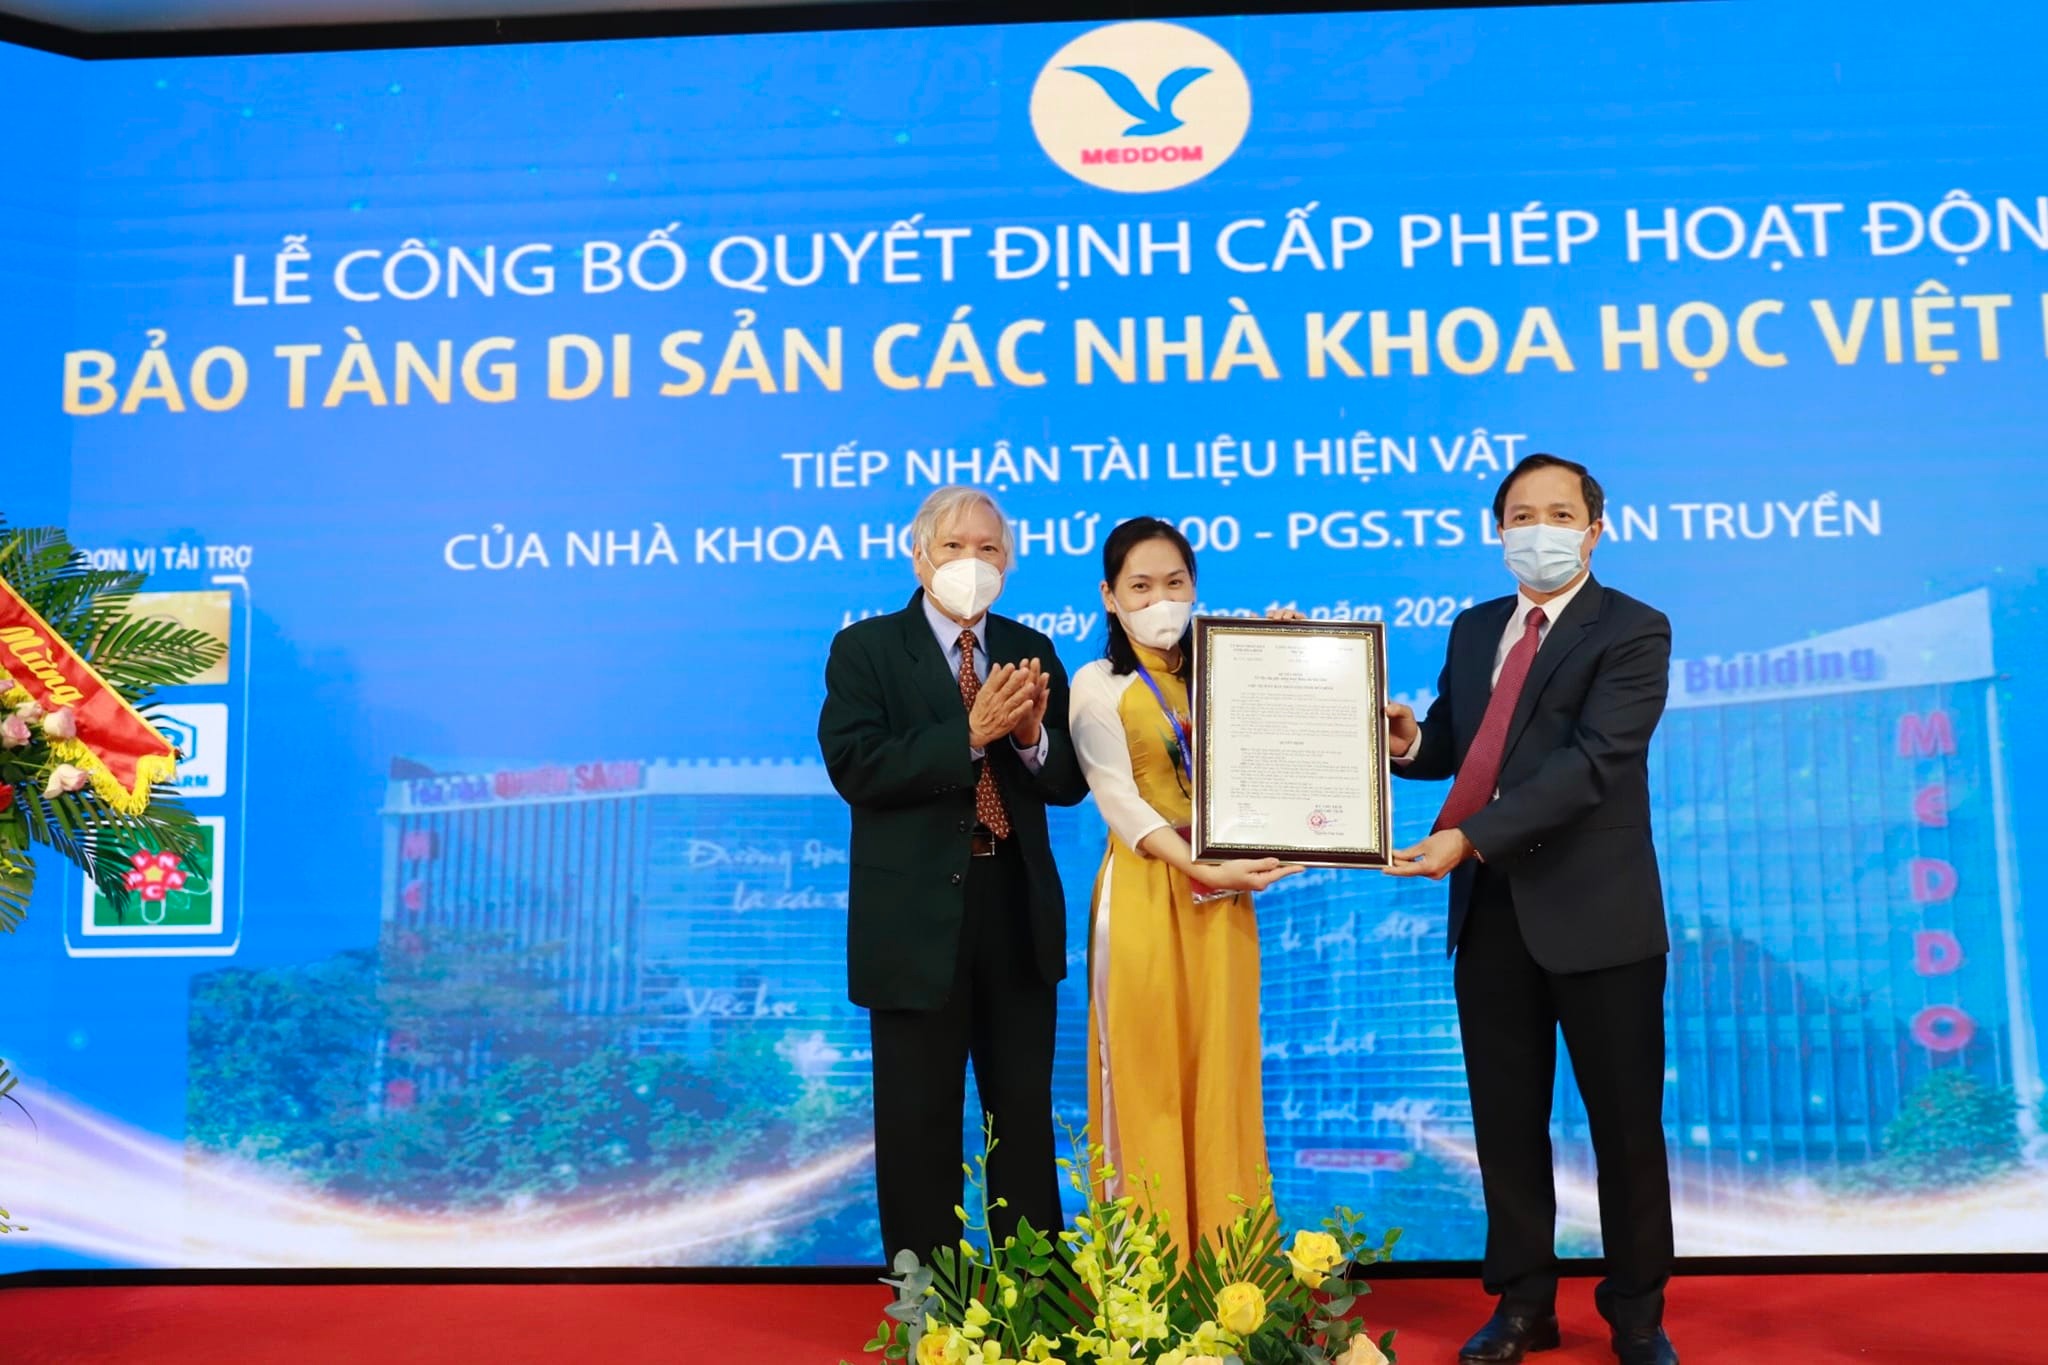 Bảo tàng Di sản các nhà khoa học Việt Nam được cấp phép và chính thức đi vào hoạt động